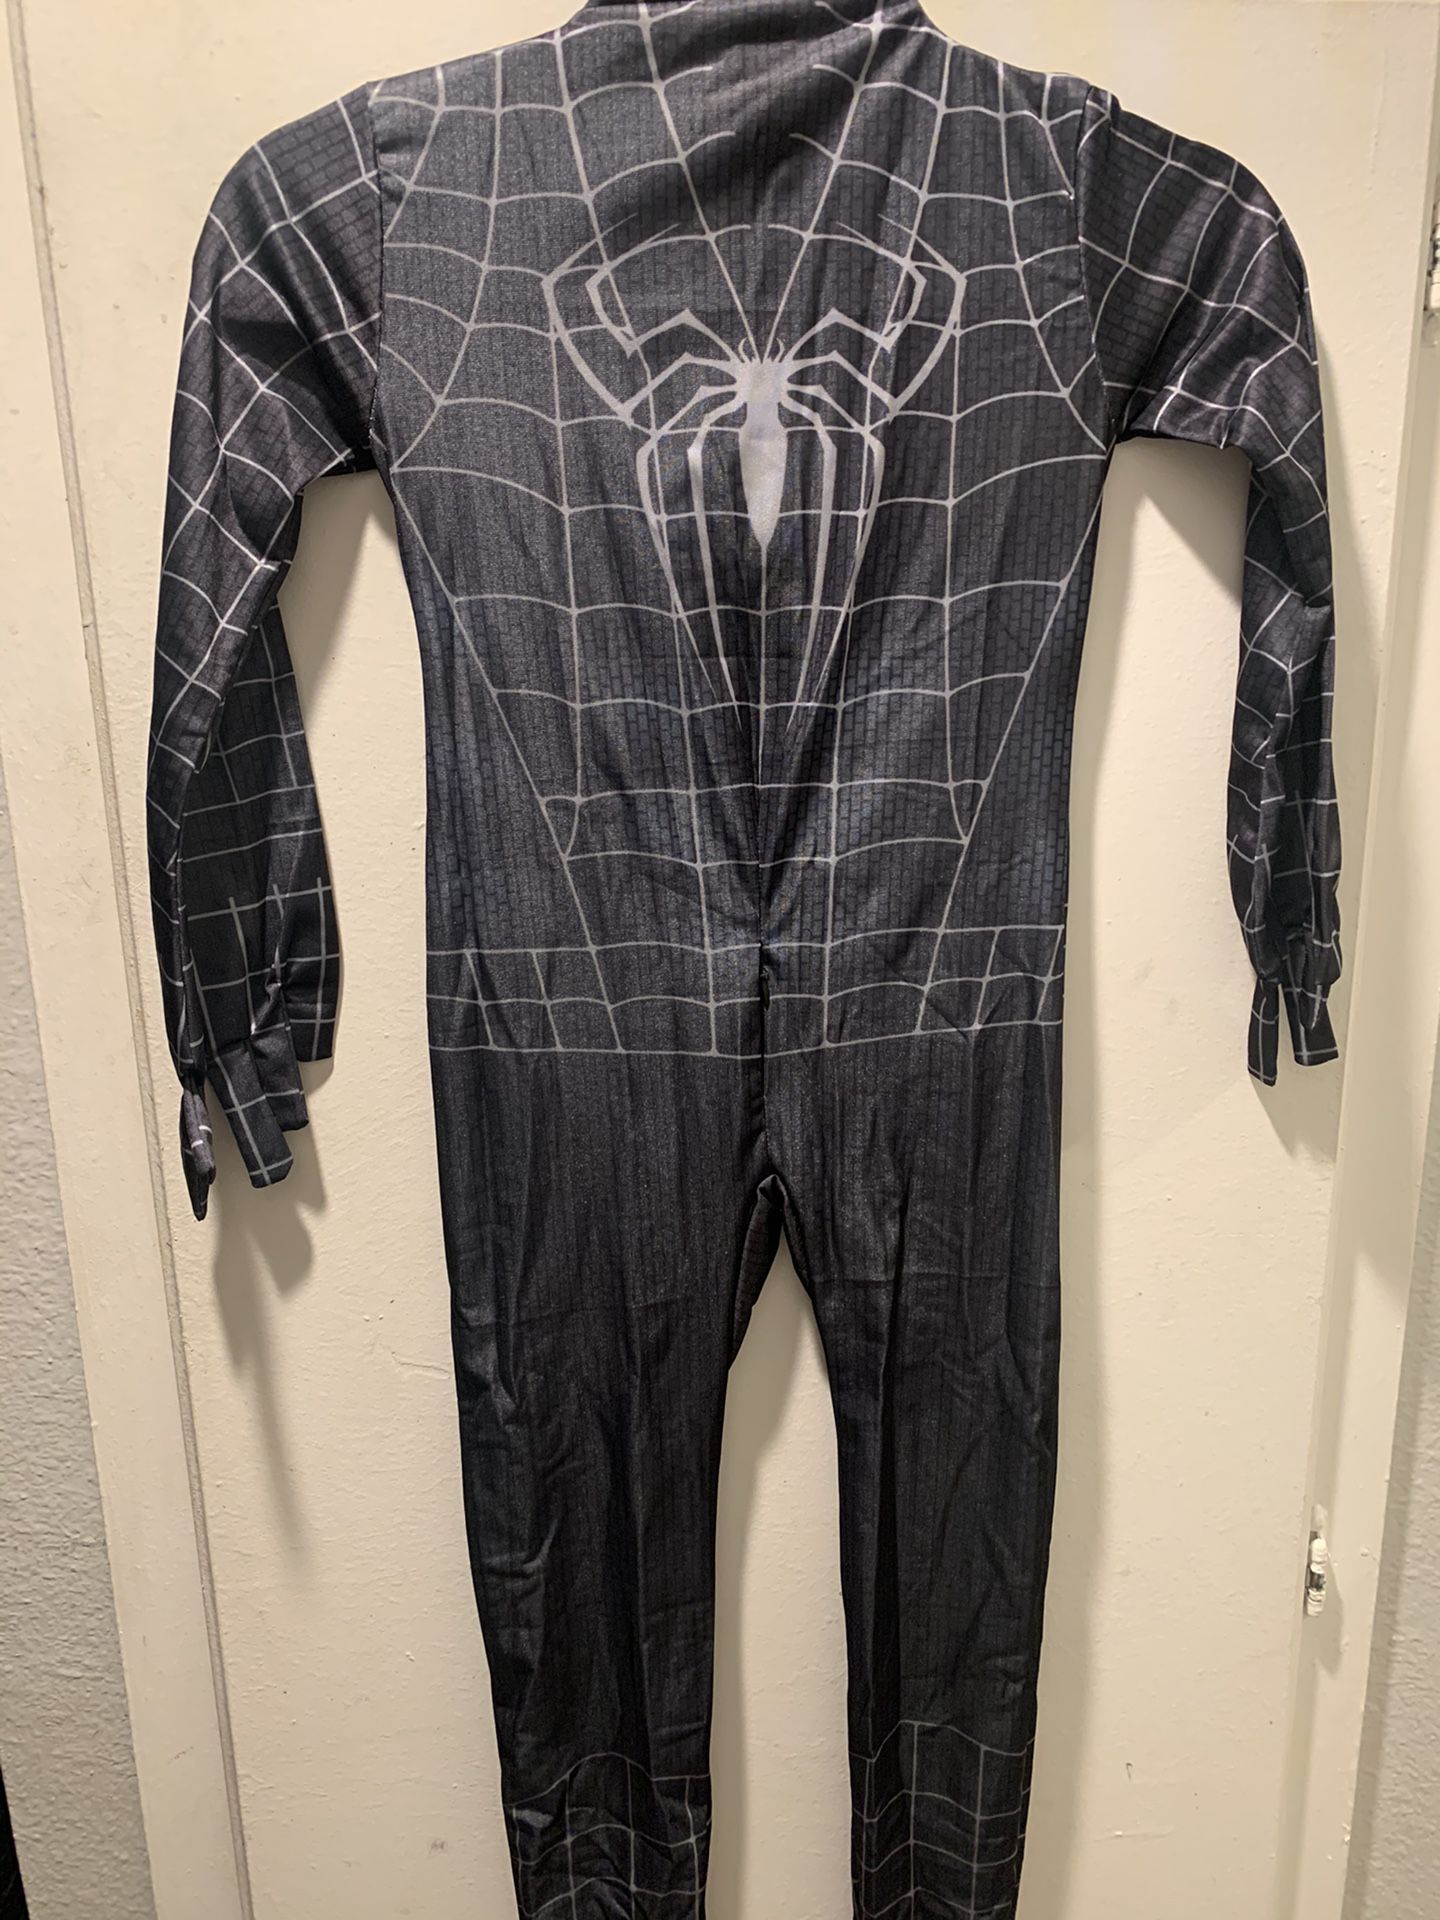 Black Spider-Man Cotume For Kids (Mask & Suit) Size: Medium